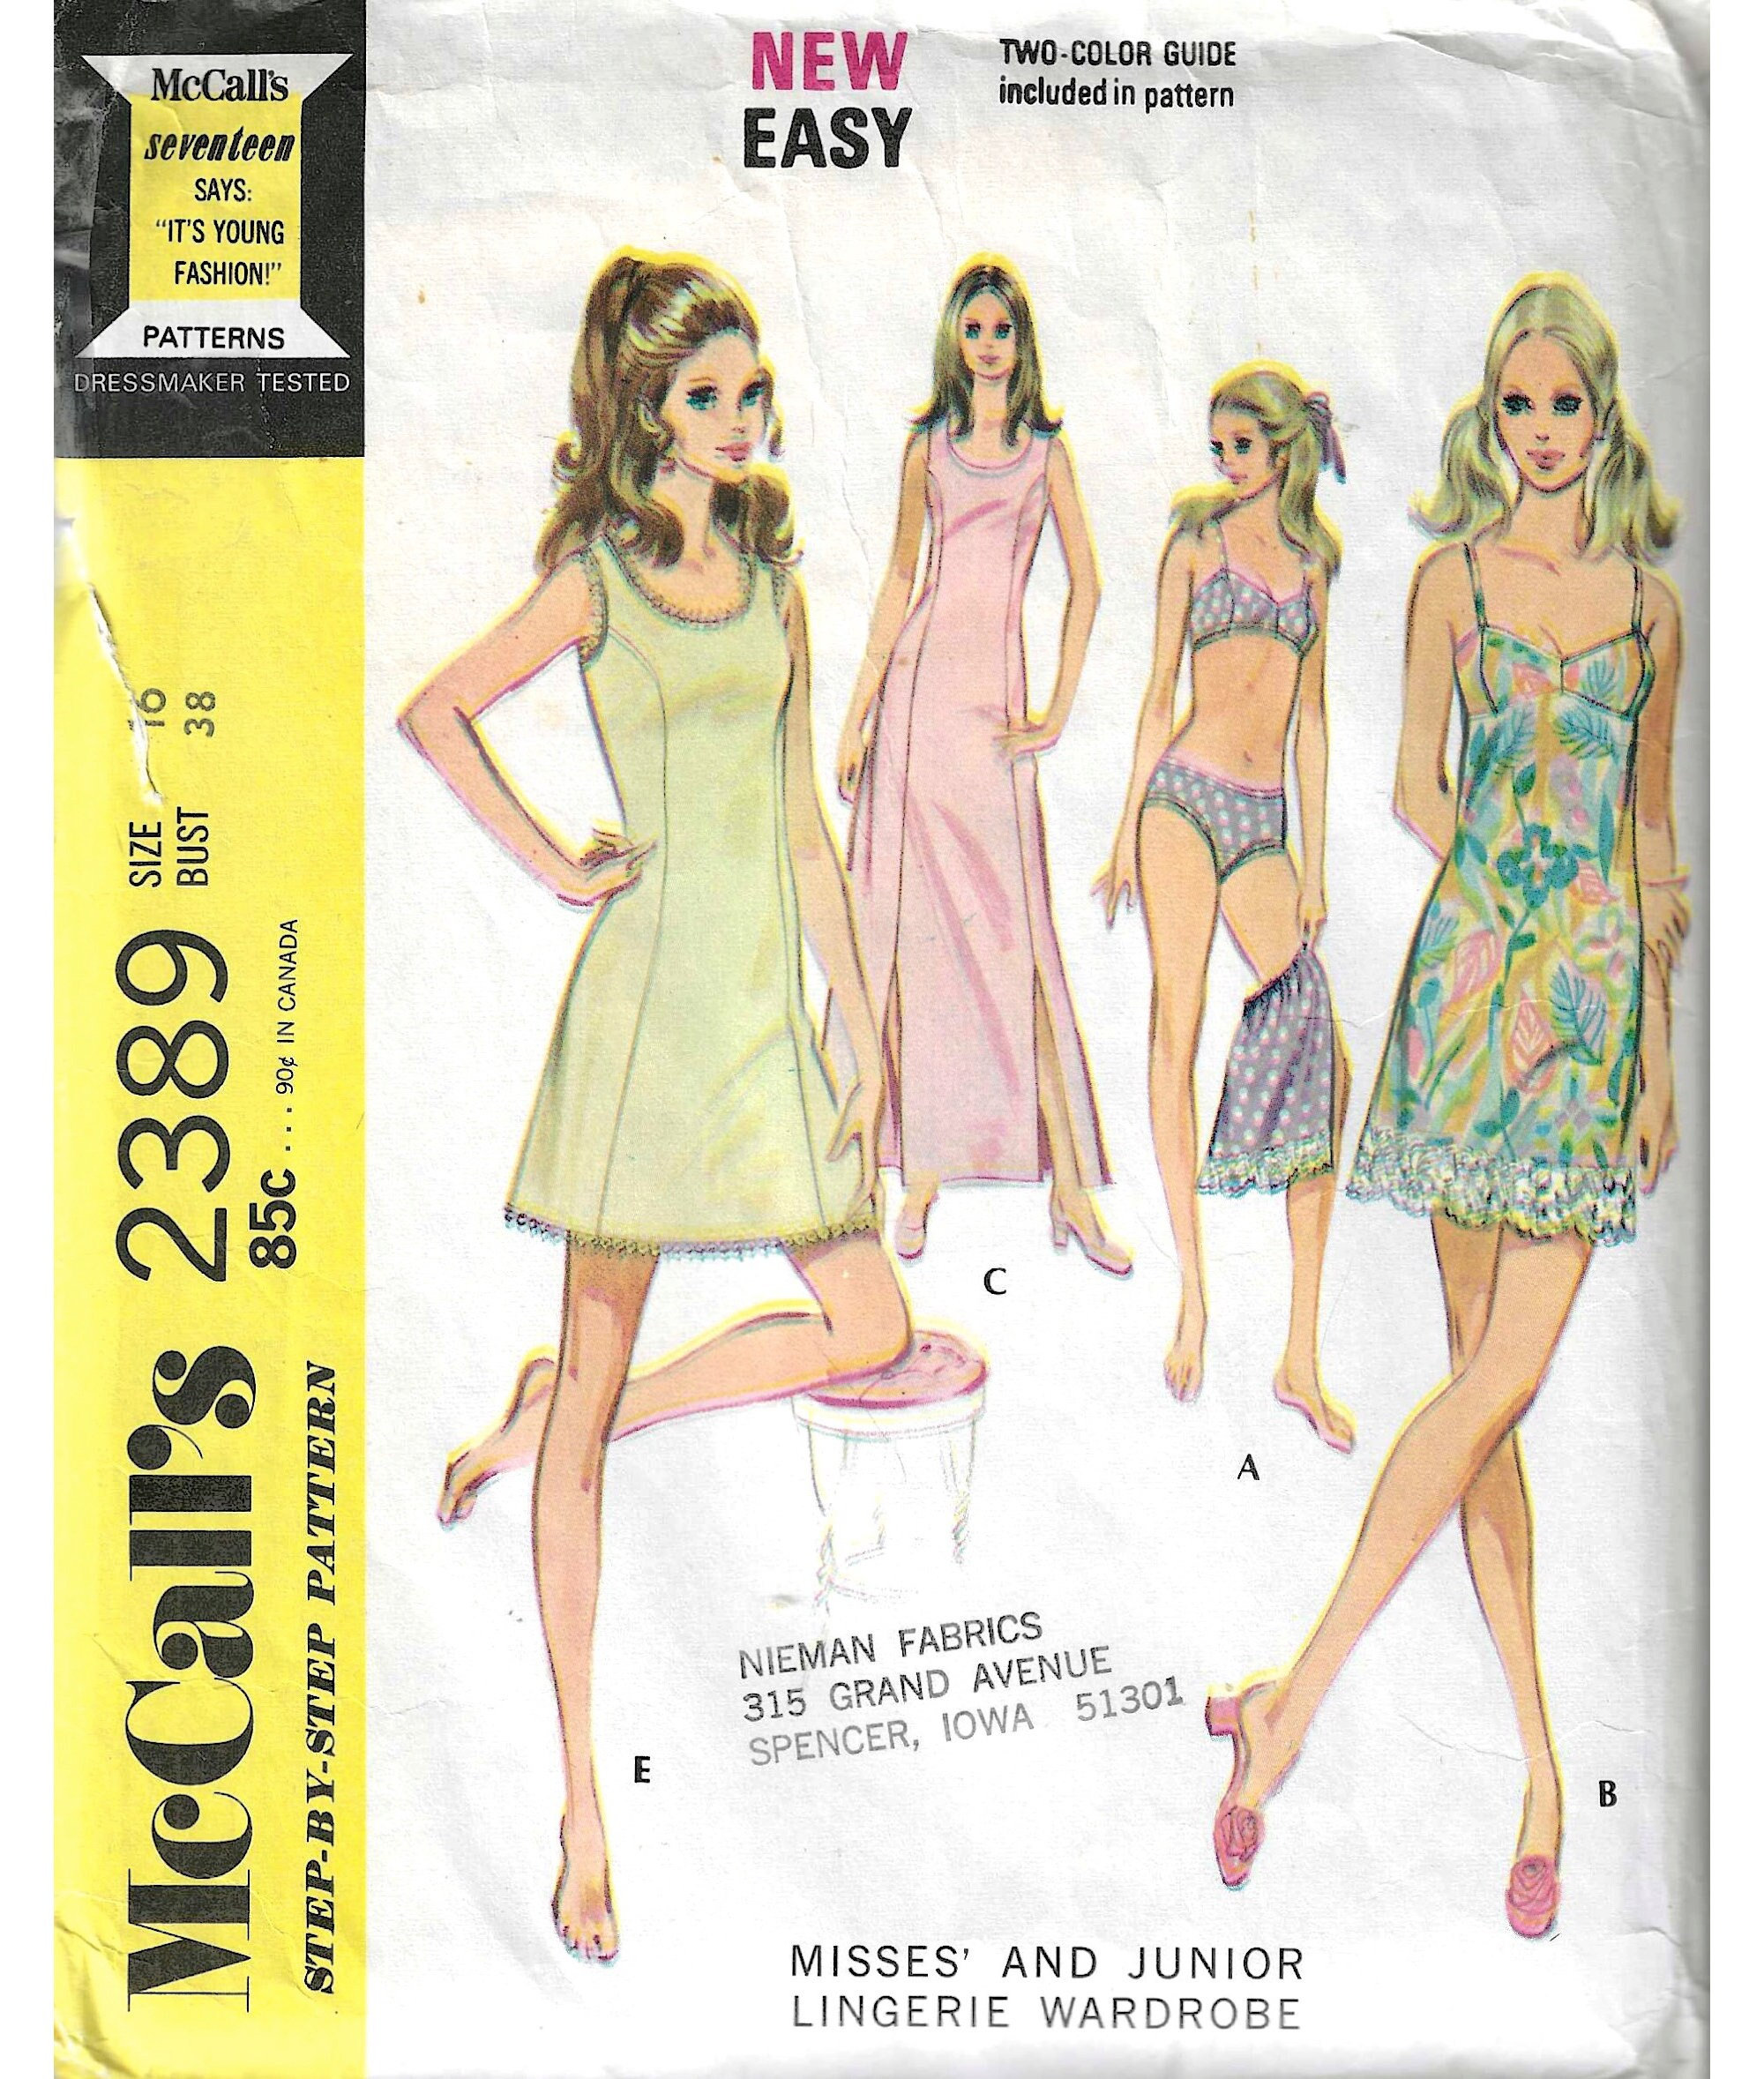 1970's Lingerie Wardrobe Bra Panties Half Slip Full Slip in Two